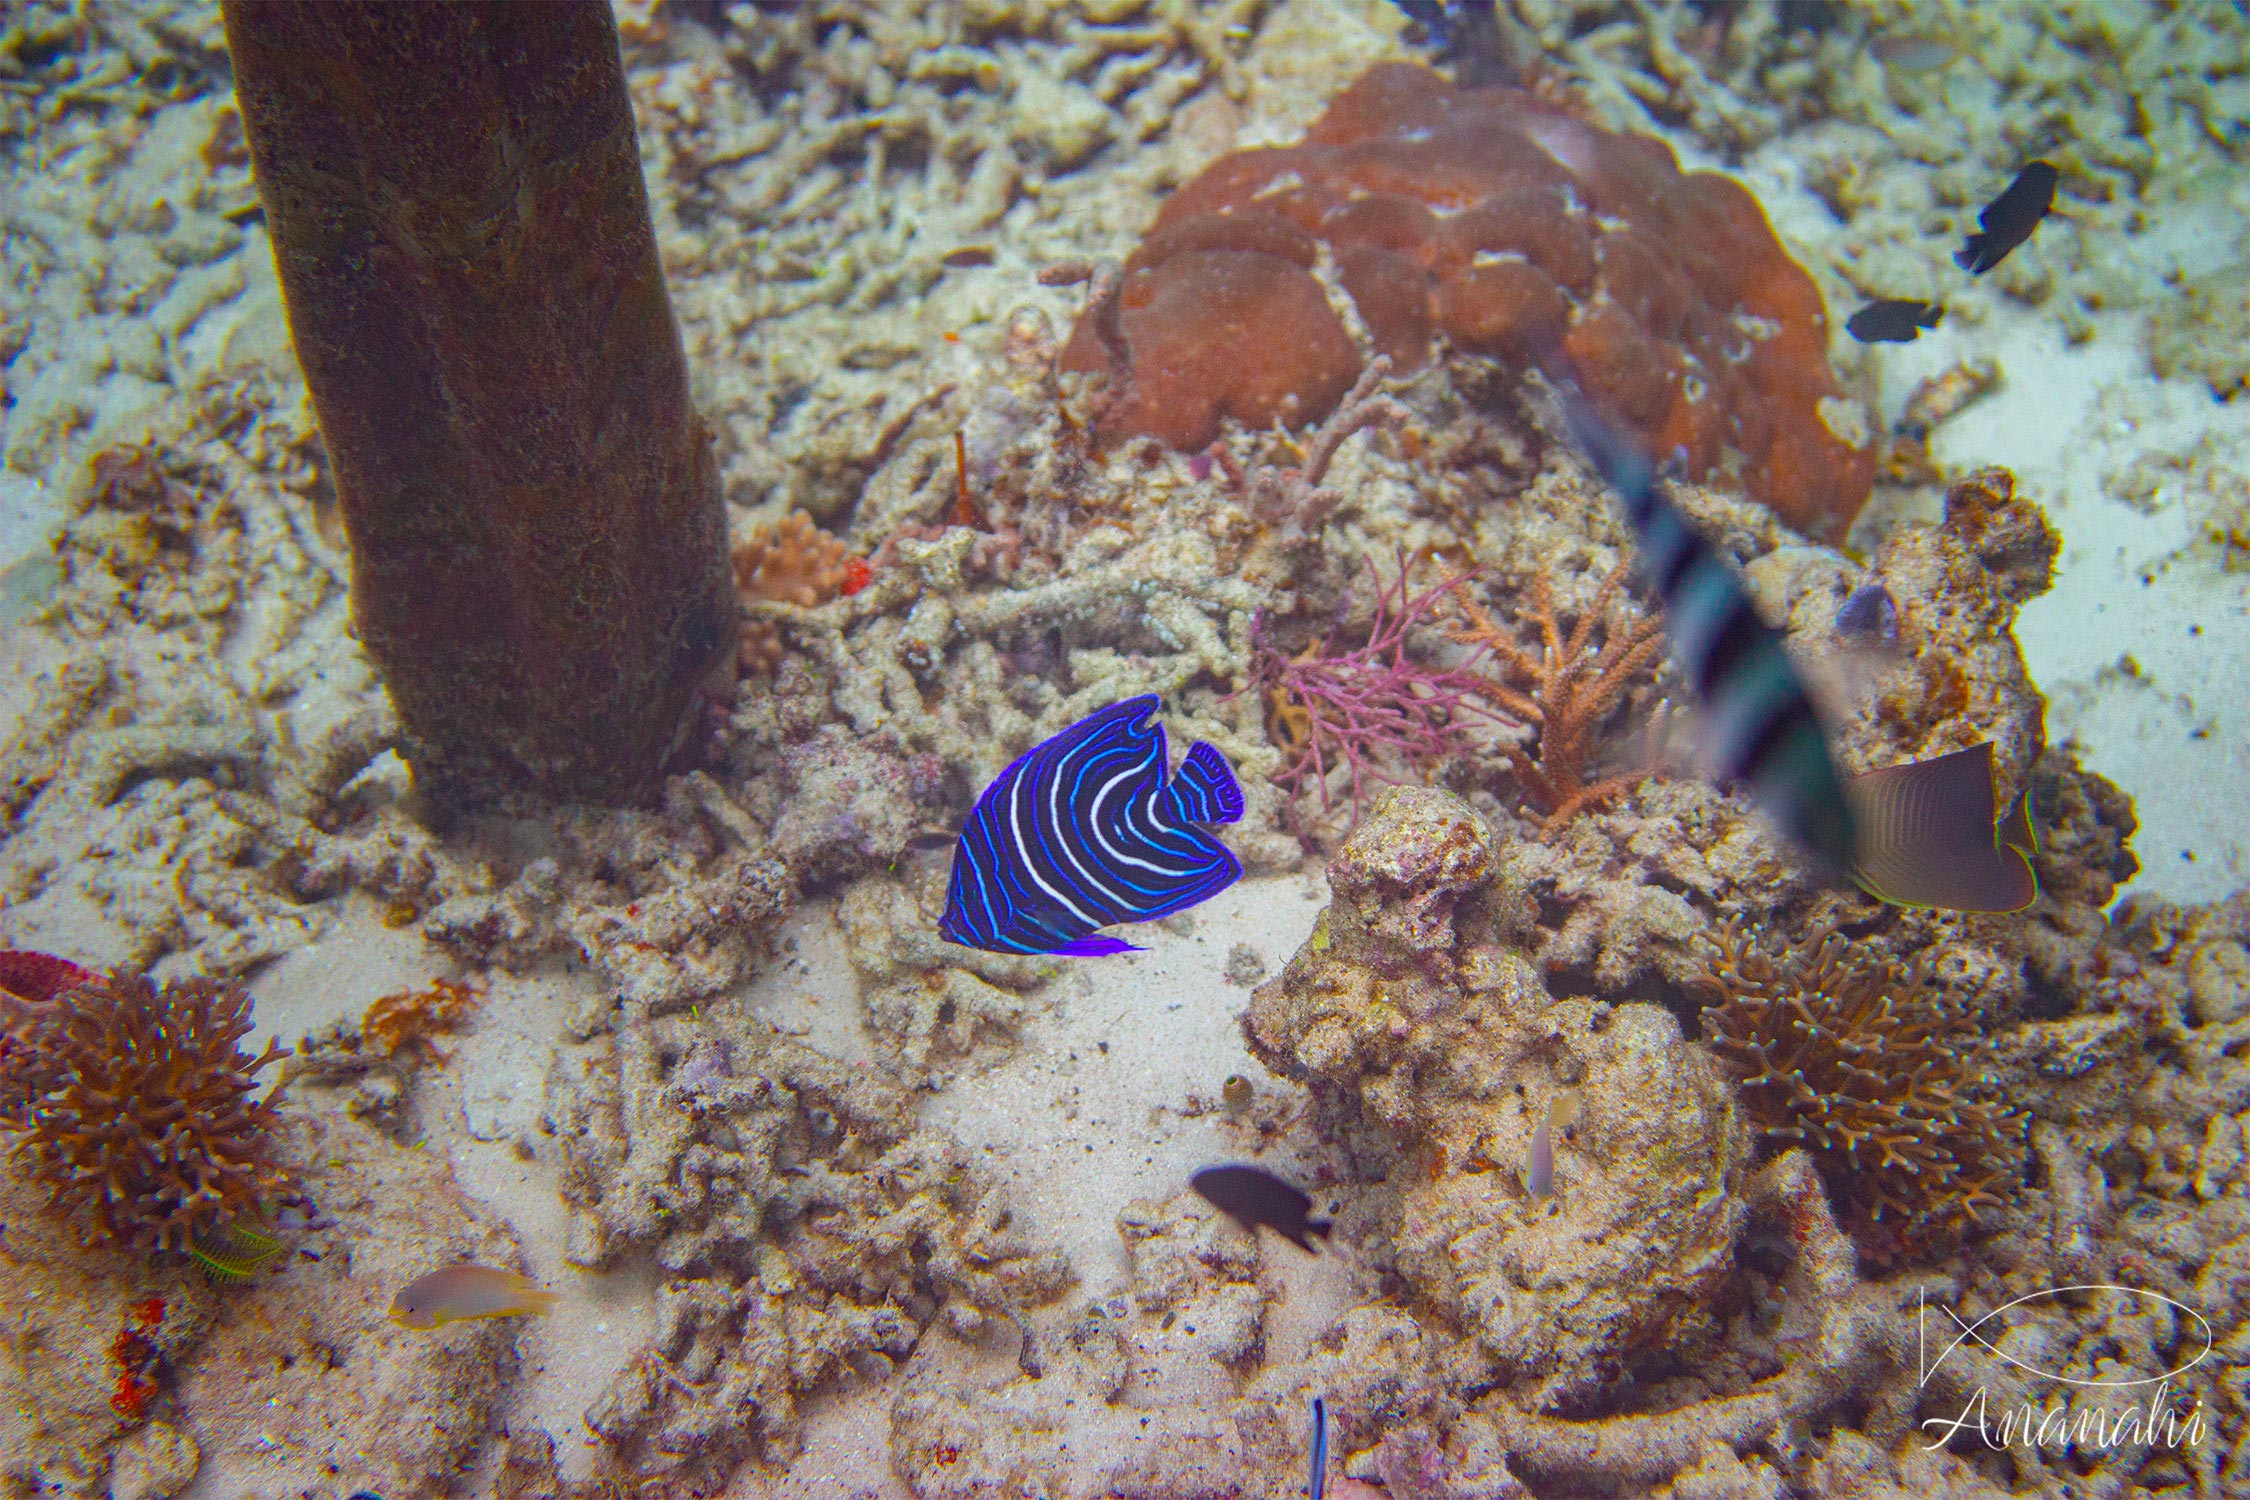 Juvenil emperor angelfish of Raja Ampat